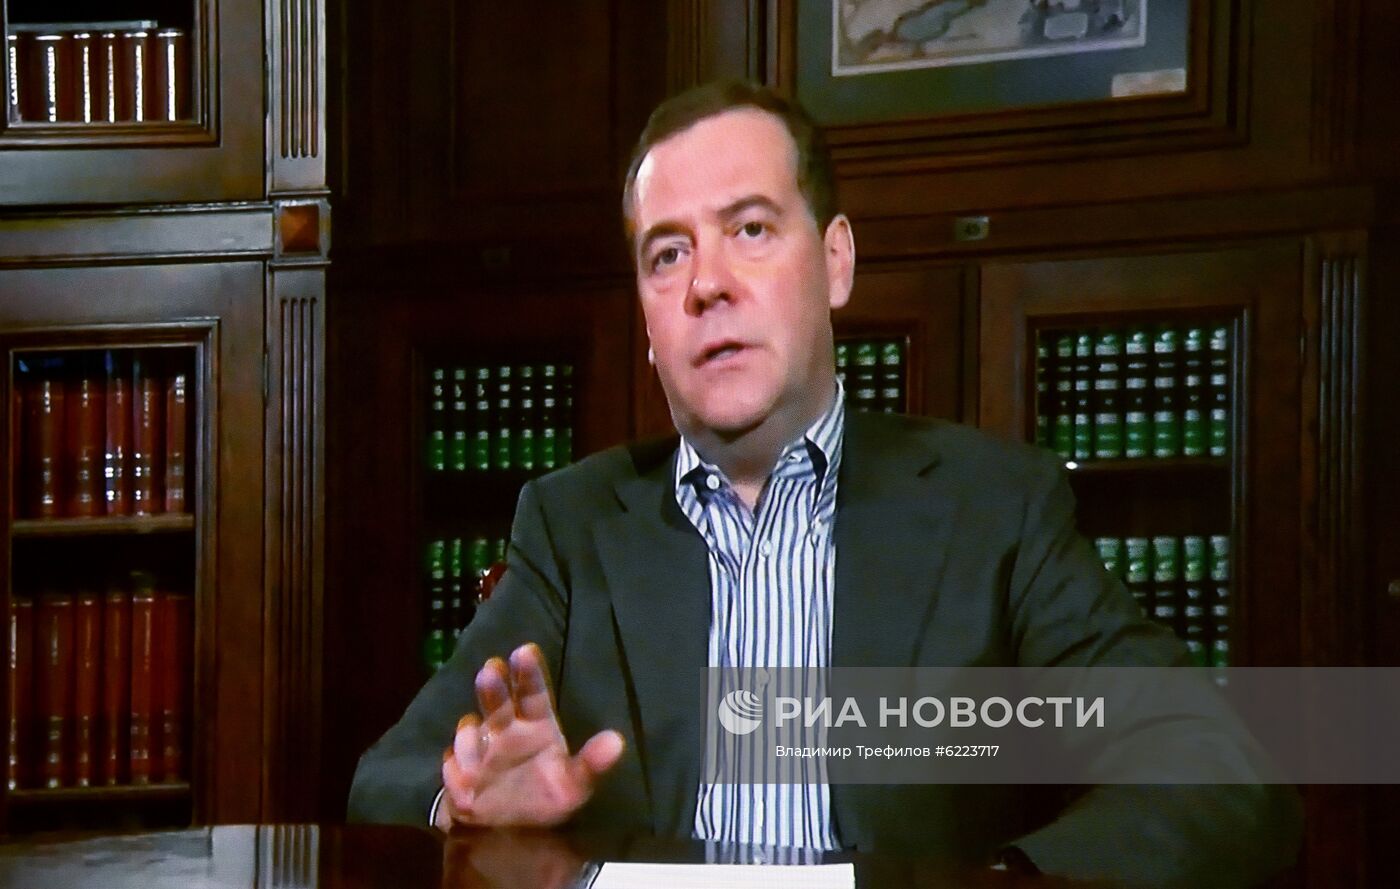 Заместитель председателя Совета безопасности РФ Д. Медведев дал интервью журналистам агентства РИА Новости